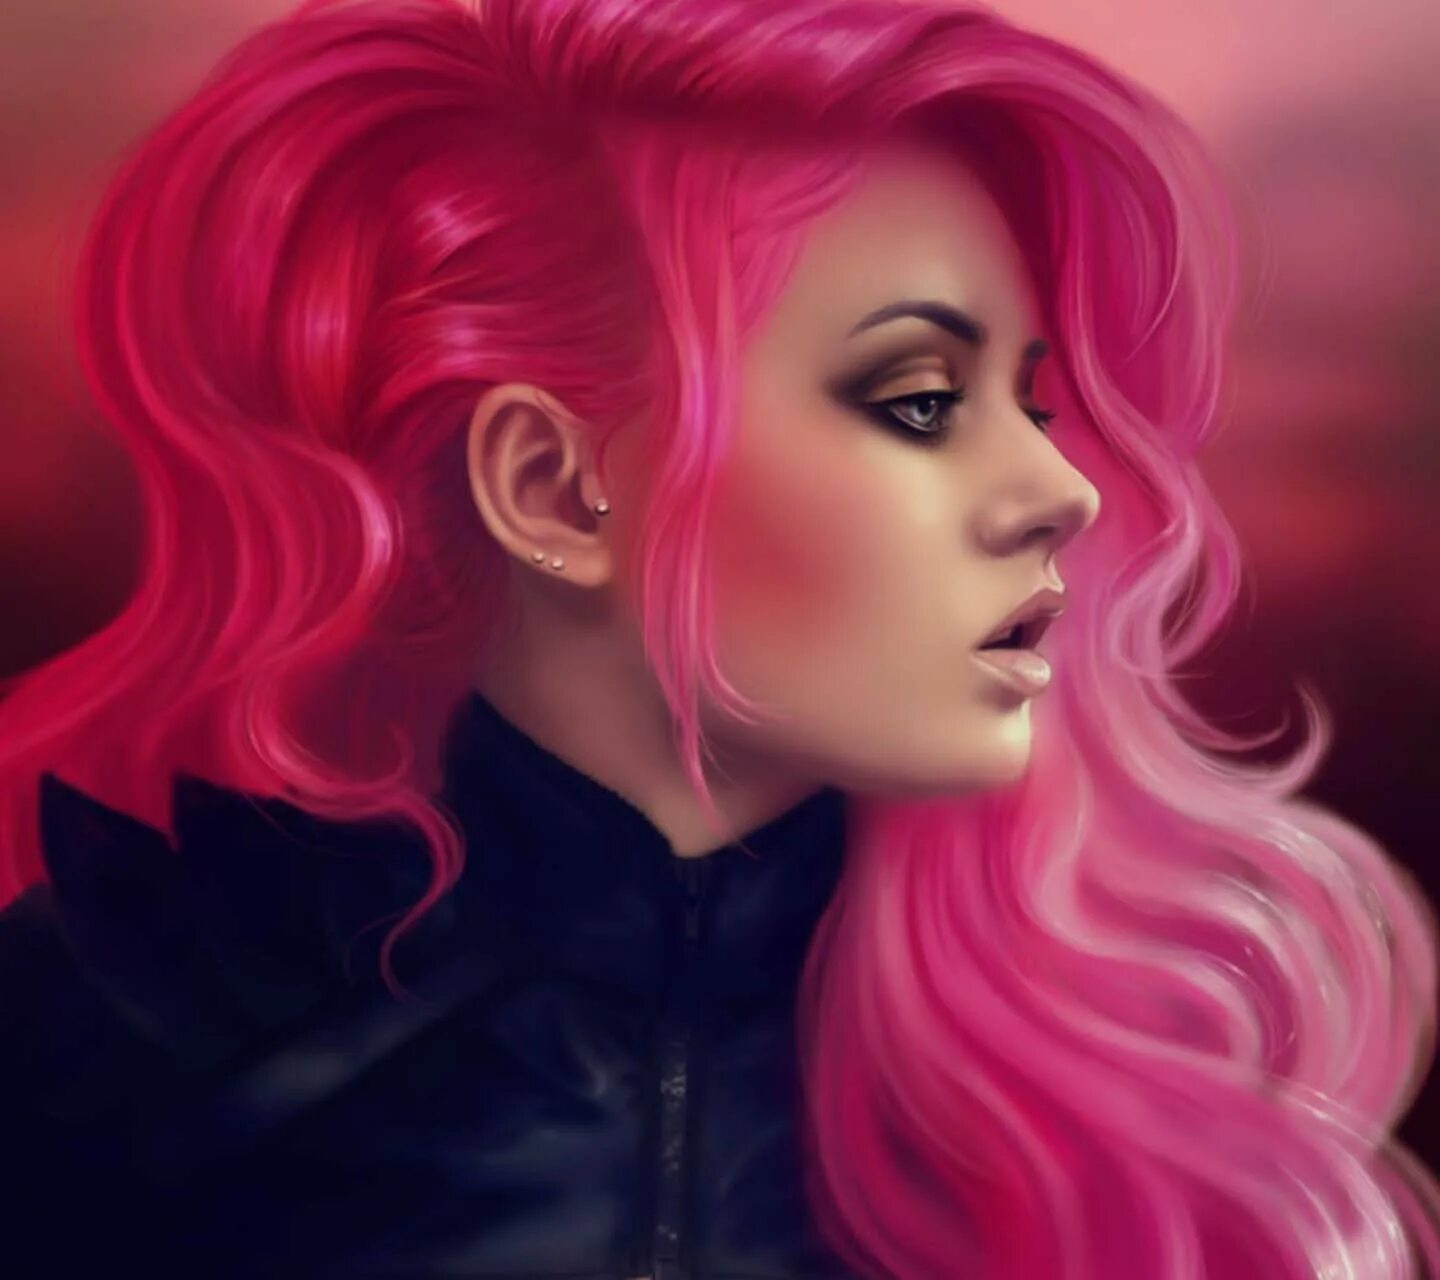 Тиктокерша Ариэль. Пинк тиктокерша. Девушка с розовыми волосами арт. Персонажи с розовыми волосами.